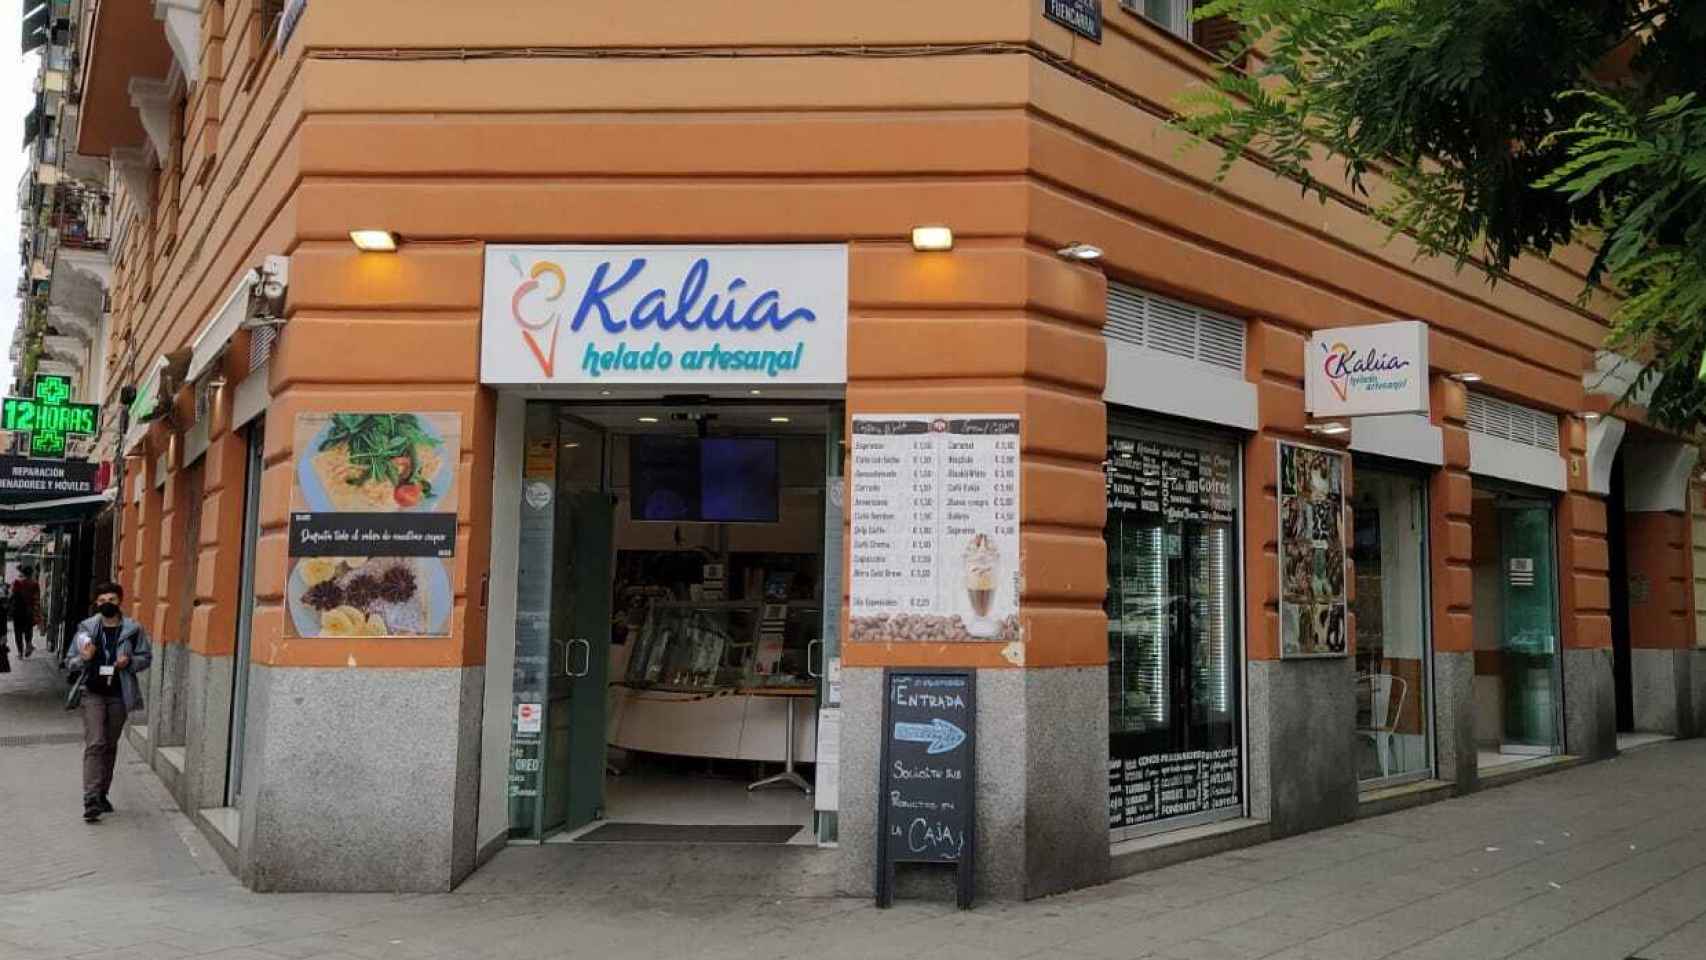 La heladería Kalúa, situada en el número 131 de la calle Fuencarral.